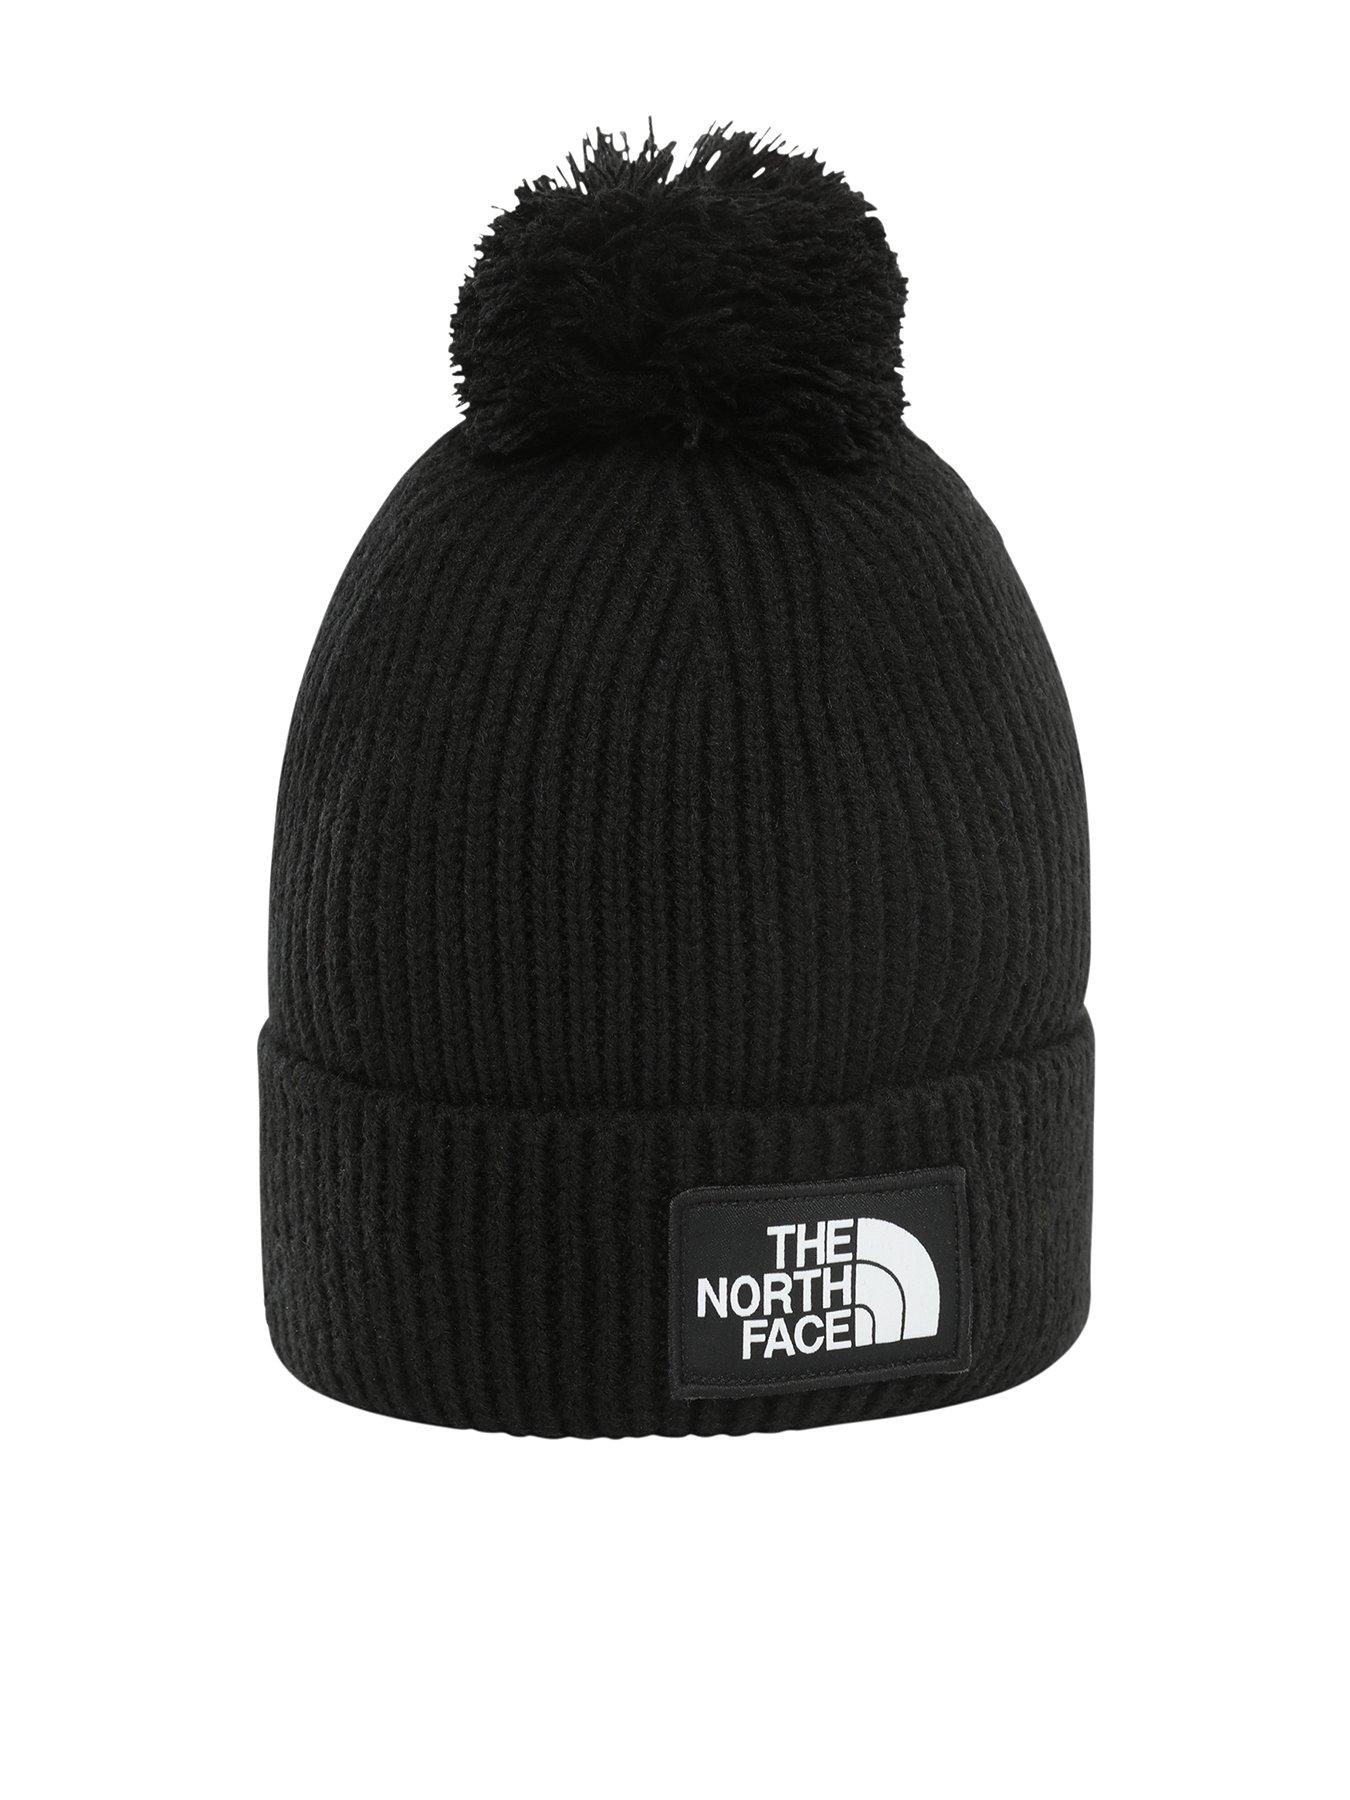 The North Face Horizon Cap - Black Noir - Accessoires textile